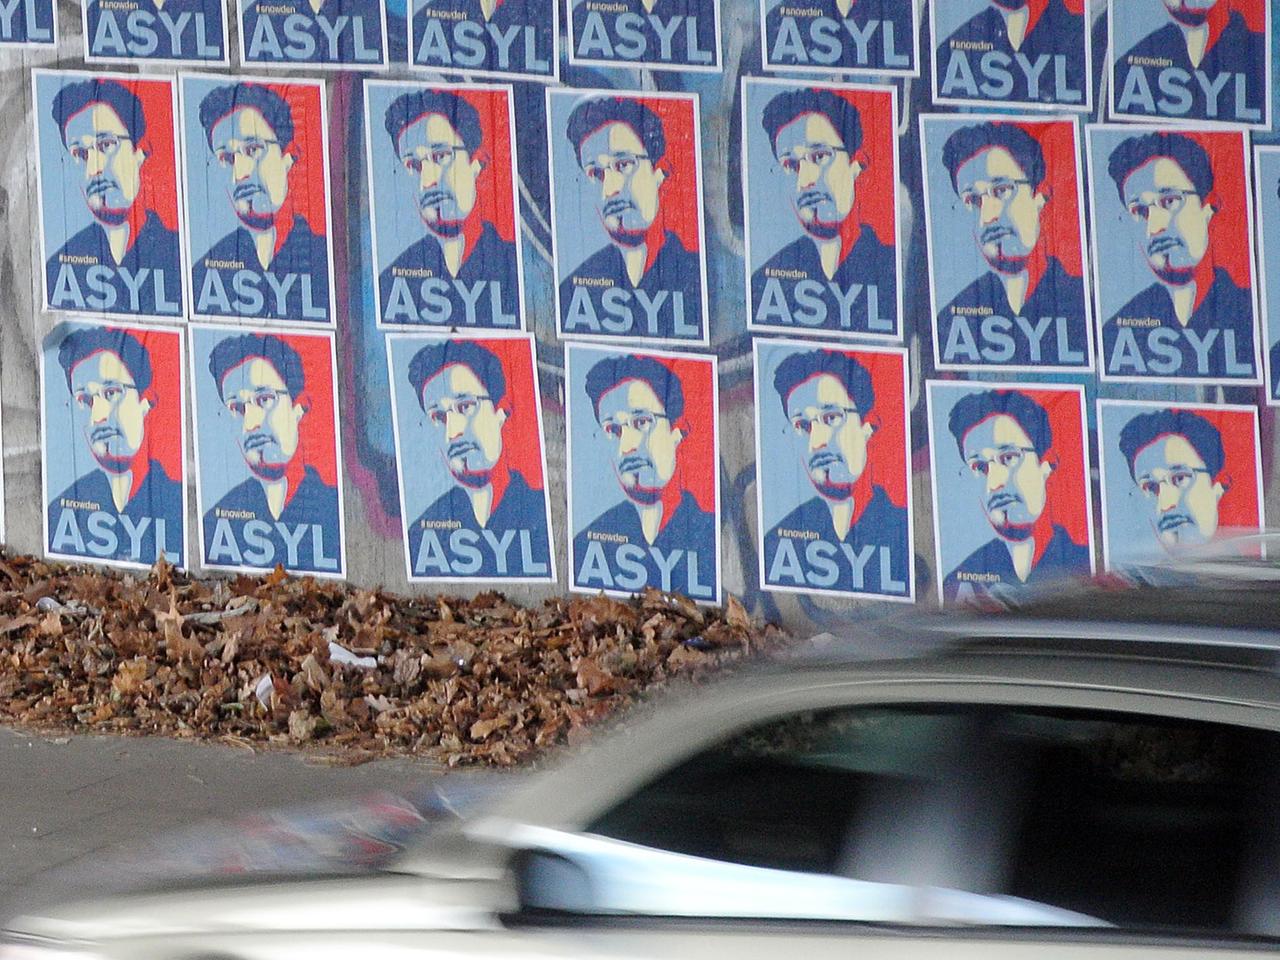 Plakate mit der Forderung nach Asyl für Edward Snowden